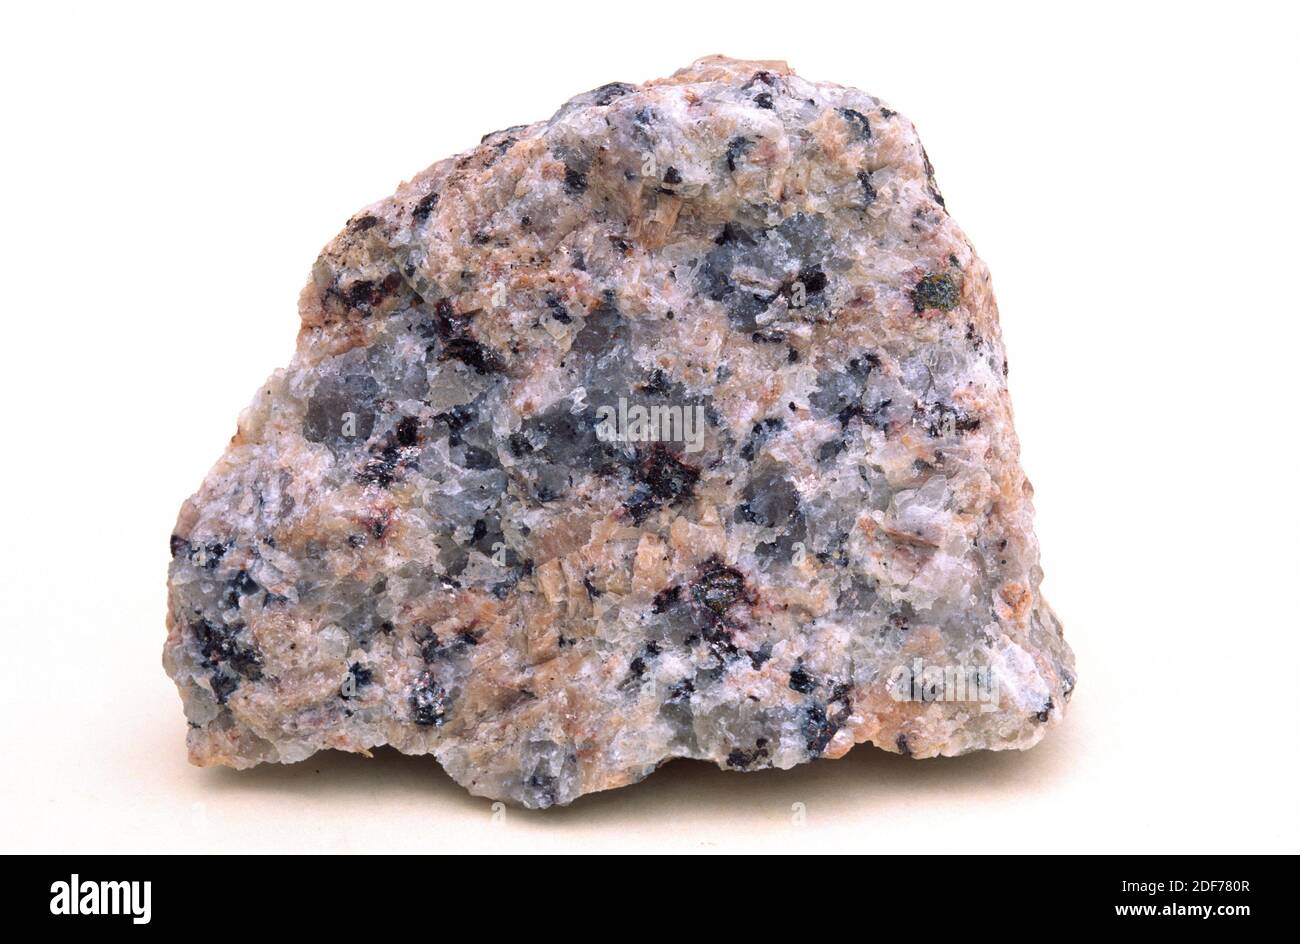 Rosafarbener Granit. Granit ist ein unheilvoller Intrusivgestein mit holokristalliner Textur. Probe. Stockfoto